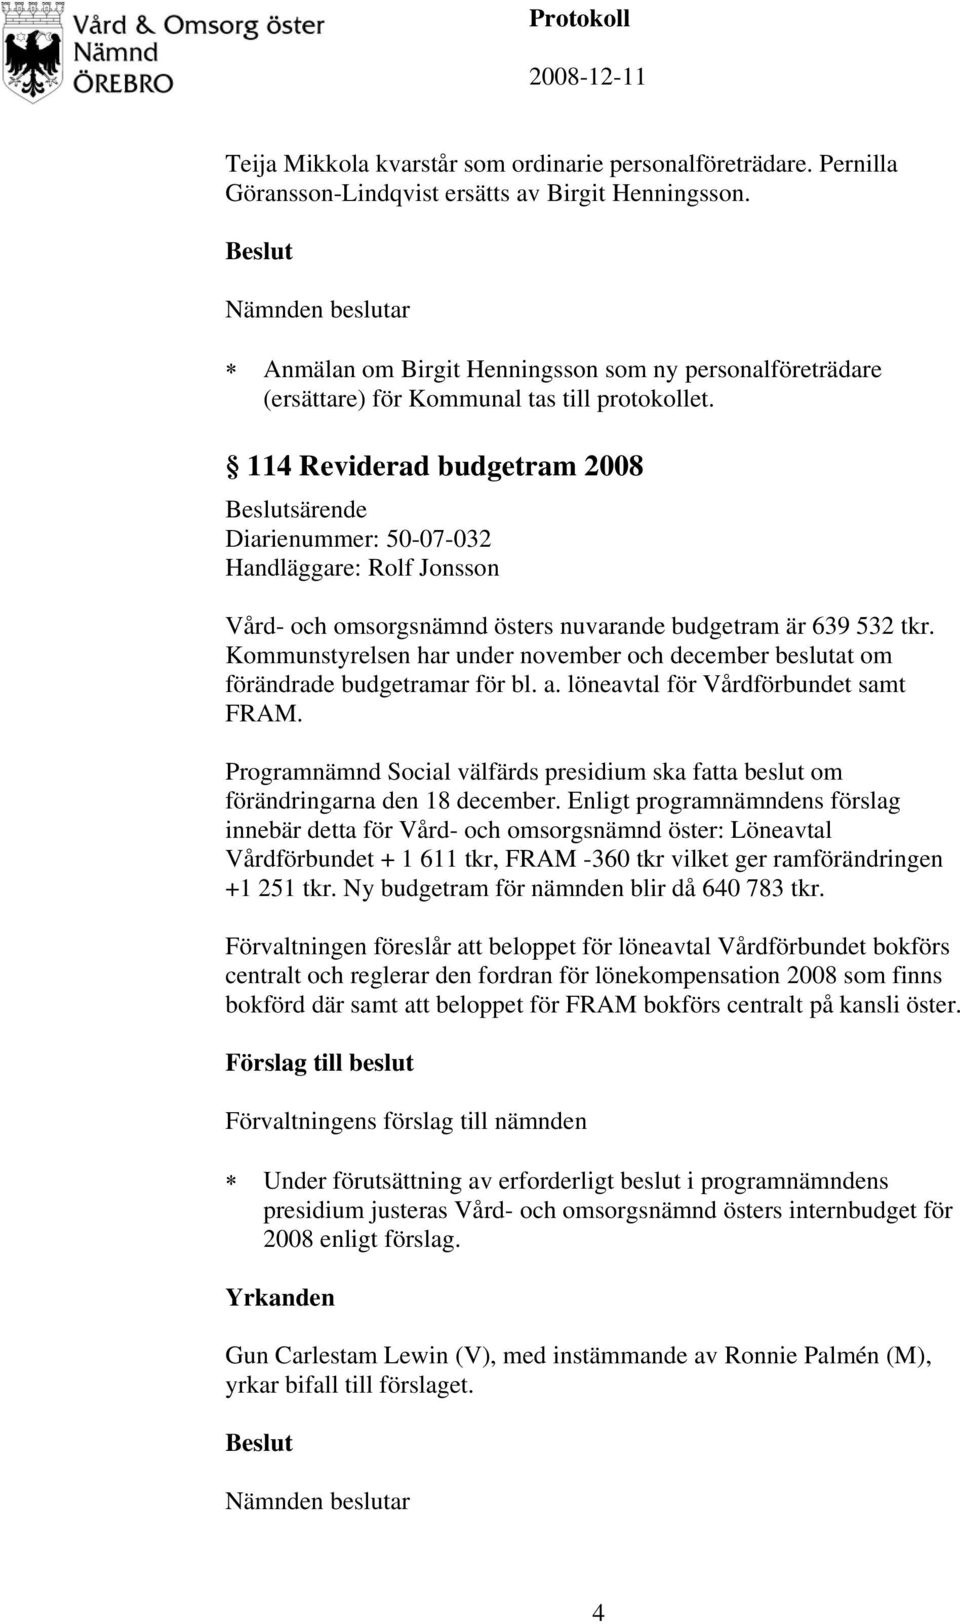 114 Reviderad budgetram 2008 särende Diarienummer: 50-07-032 Handläggare: Rolf Jonsson Vård- och omsorgsnämnd östers nuvarande budgetram är 639 532 tkr.